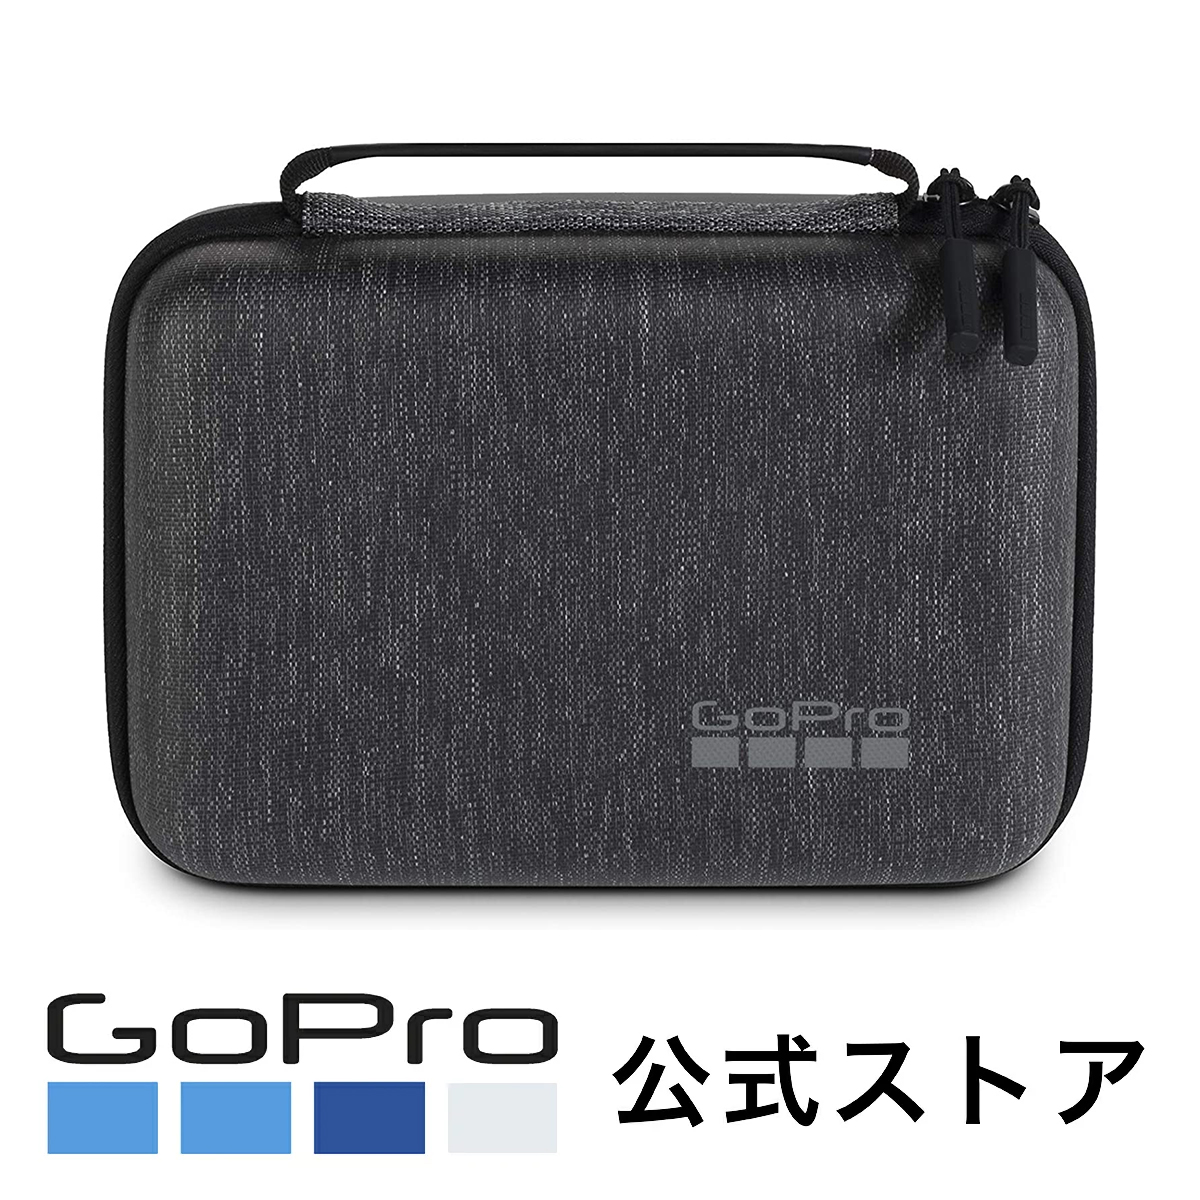 楽天市場 Gopro公式 ケイシー Ver2 0 Abssc 002 国内正規品 Gopro公式ストア 楽天市場店